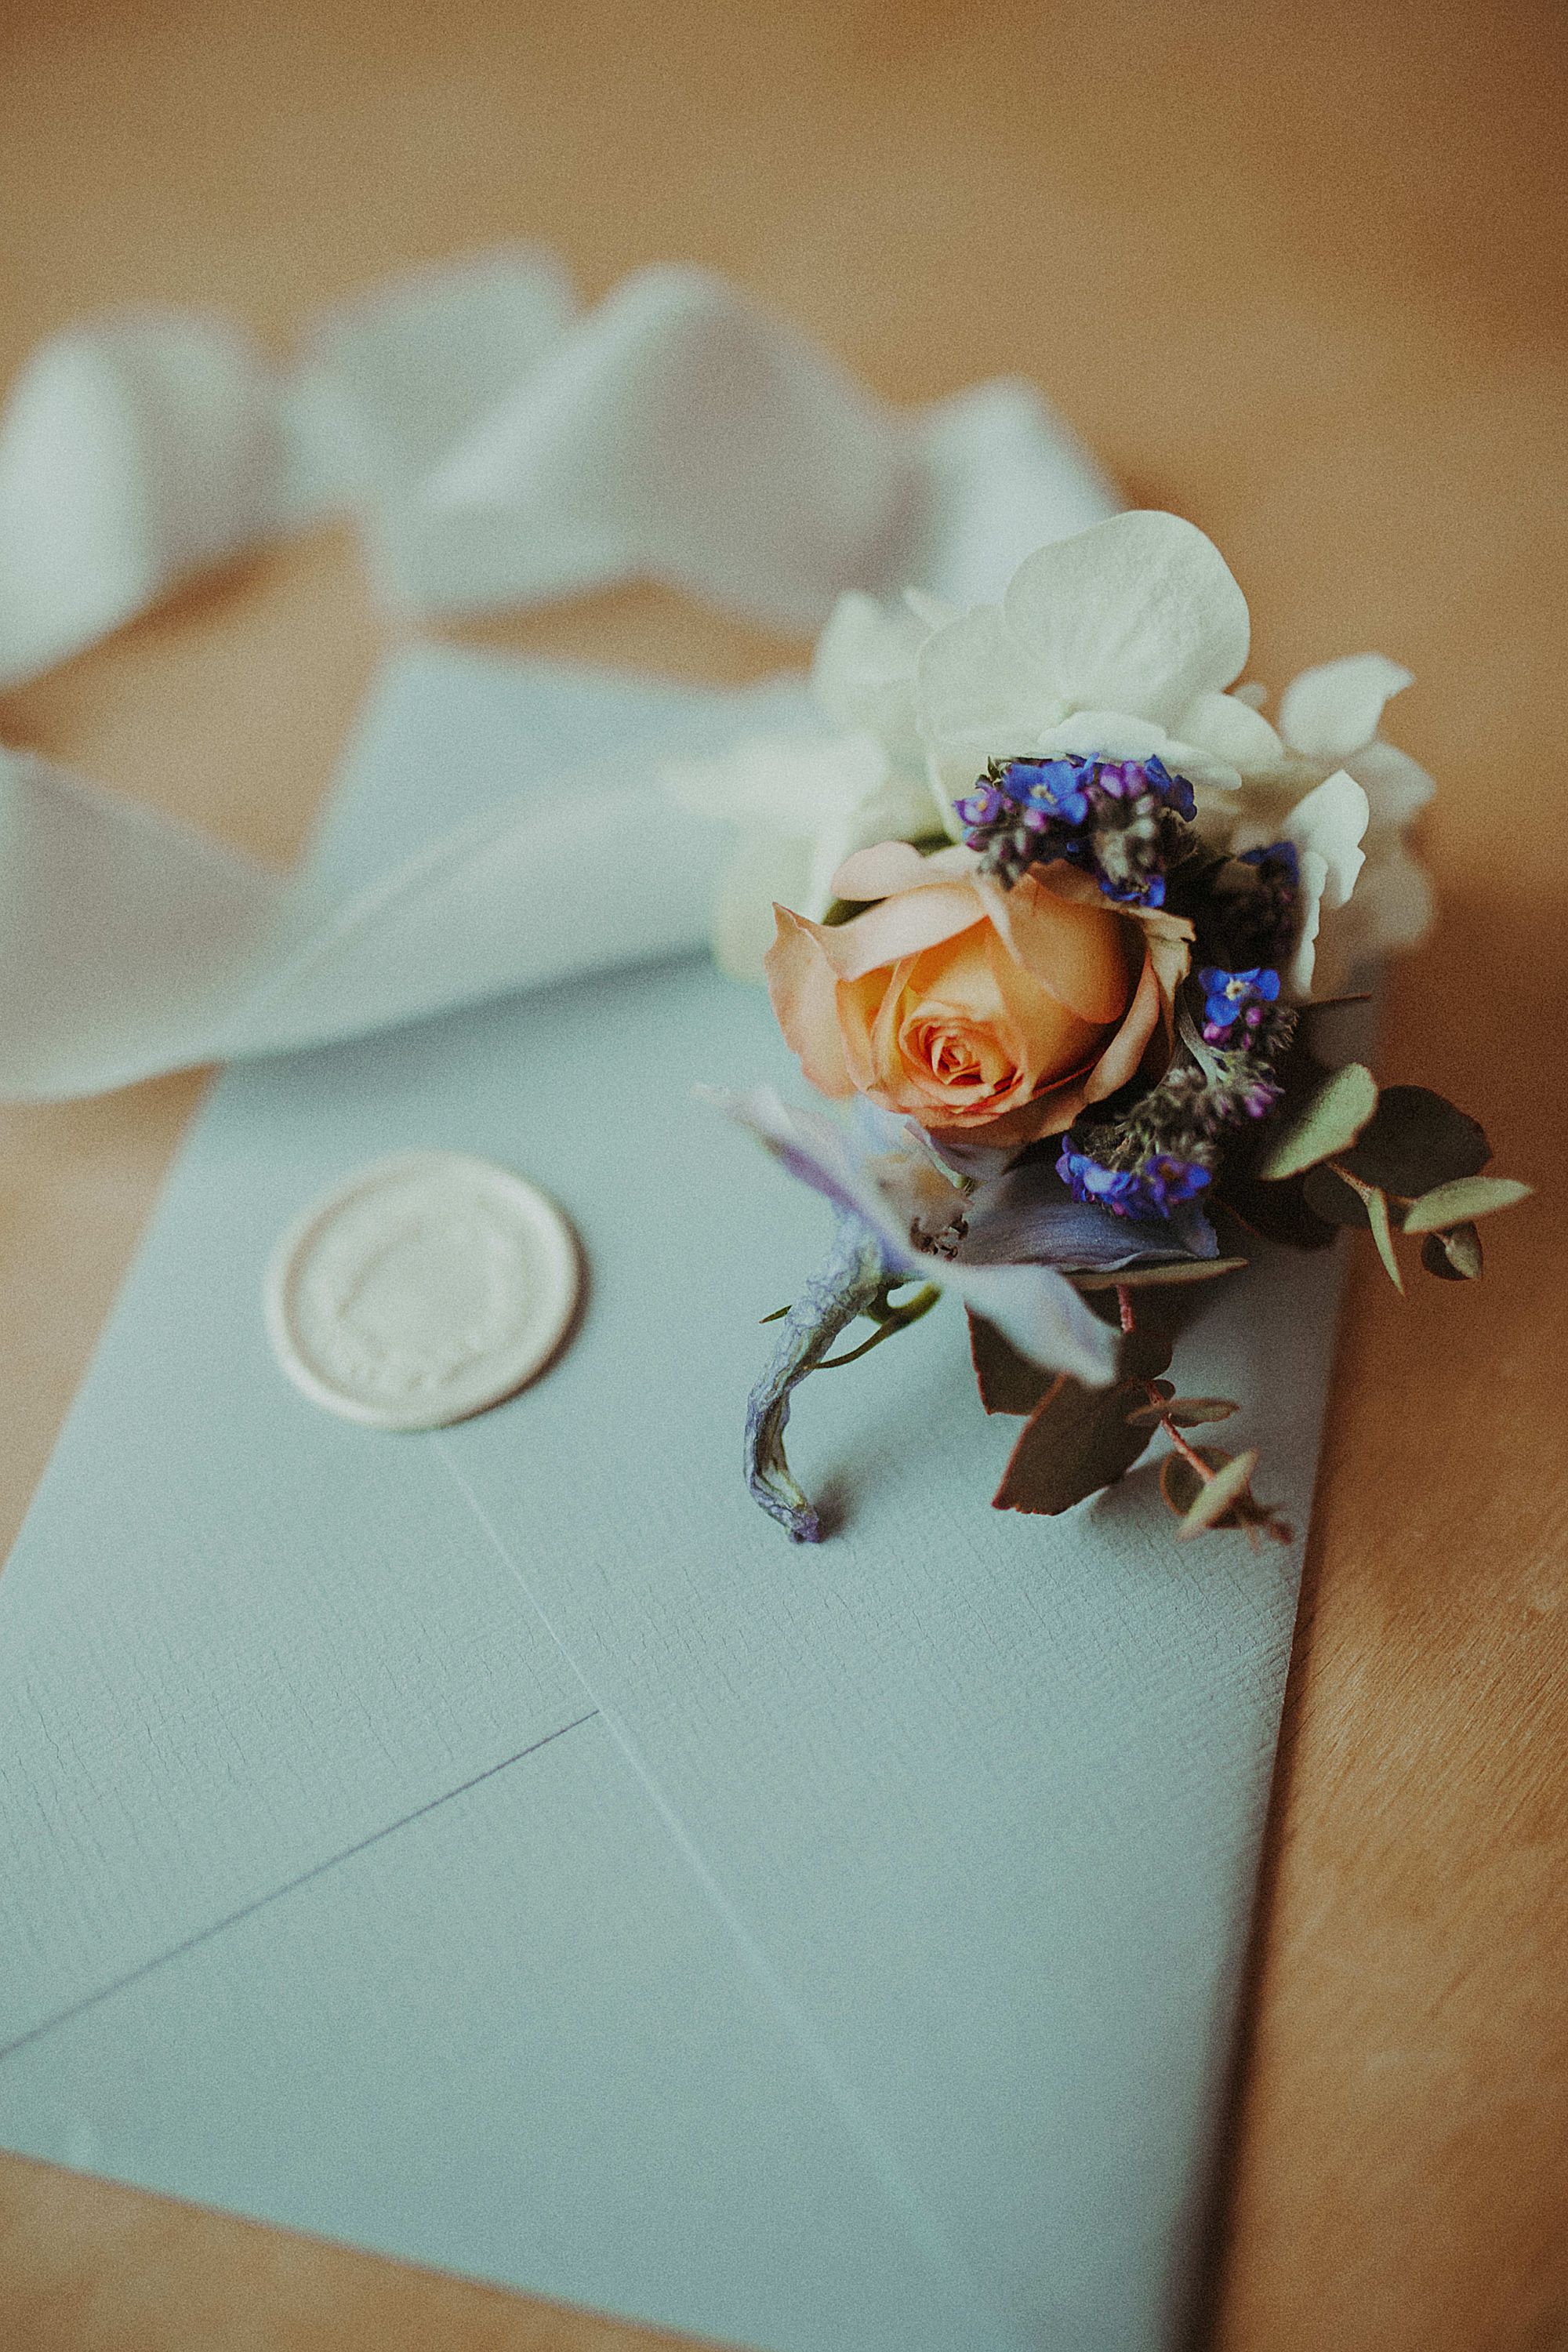 Ein kleiner Blumenstrauß liegt auf einem Brief